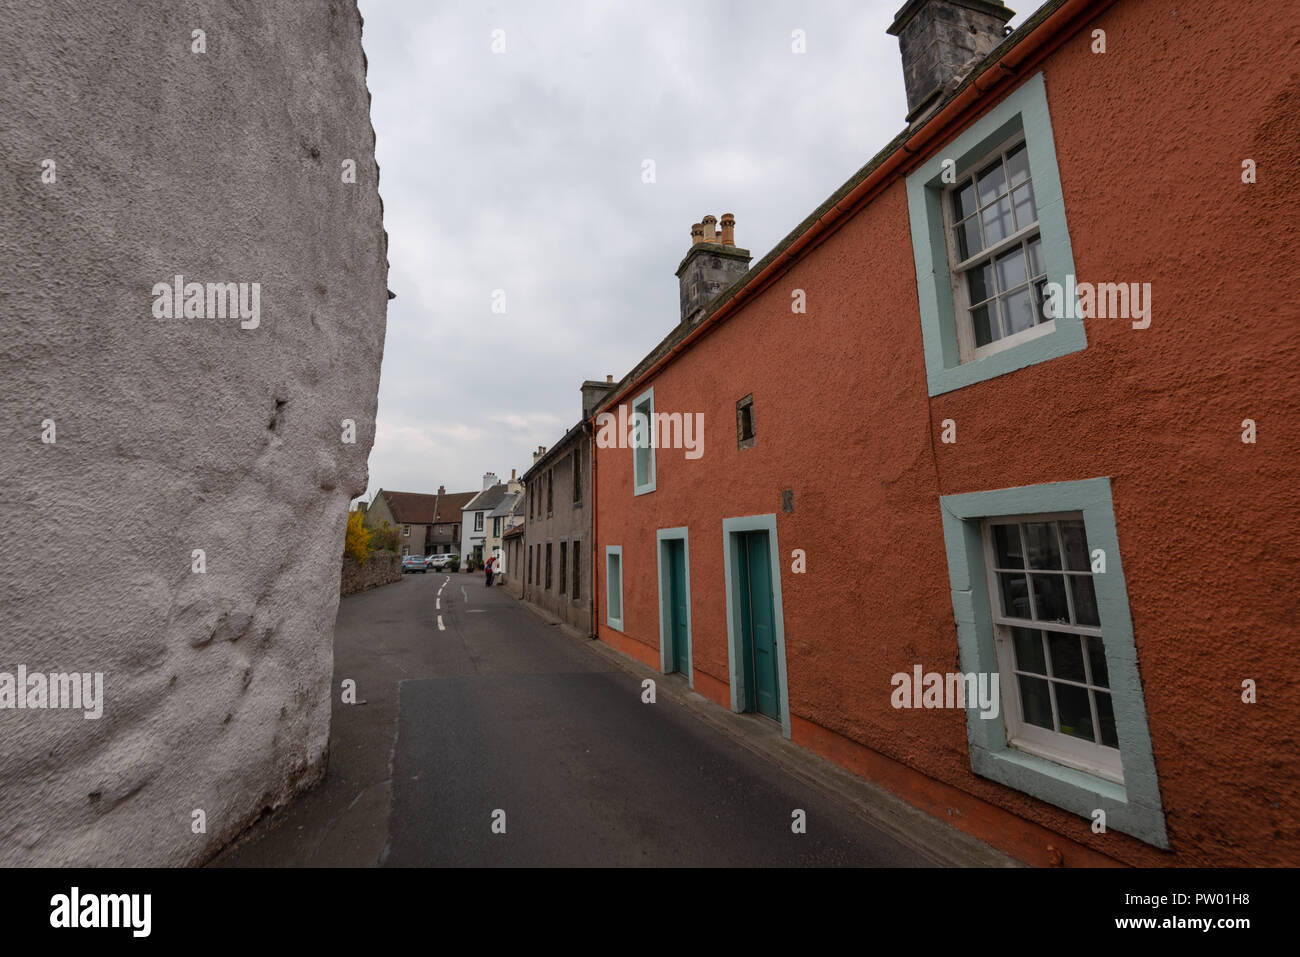 Tanhouse Brae, bunte alte Häuser, folgende Sehenswürdigkeiten: Culross, Dunfermline, Fife, Schottland, Vereinigtes Königreich Stockfoto